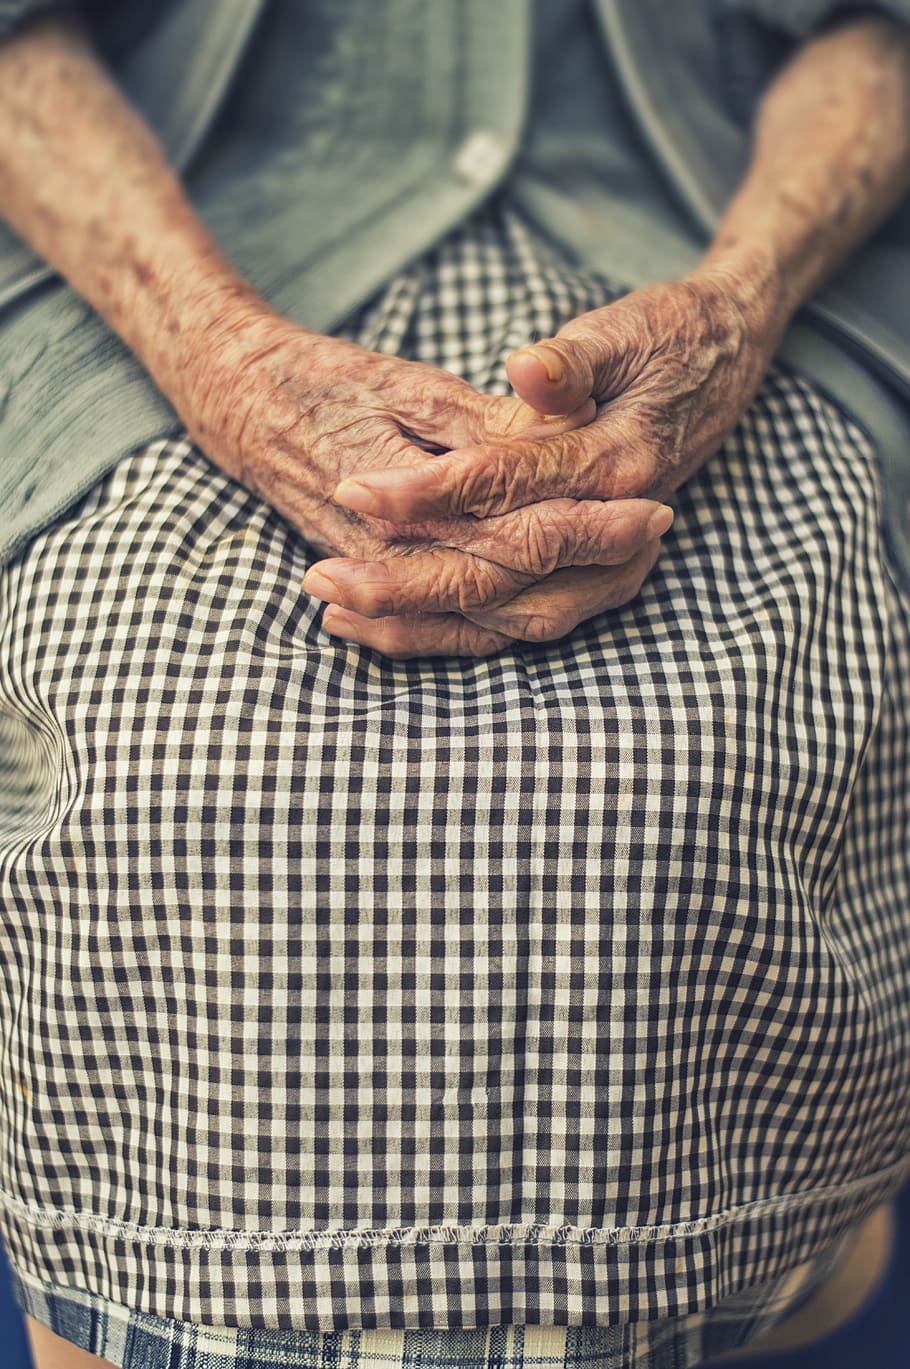 person hands toghether, hands, folded, woman, old, finger, resting, prayer, wrinkles, wrinkled